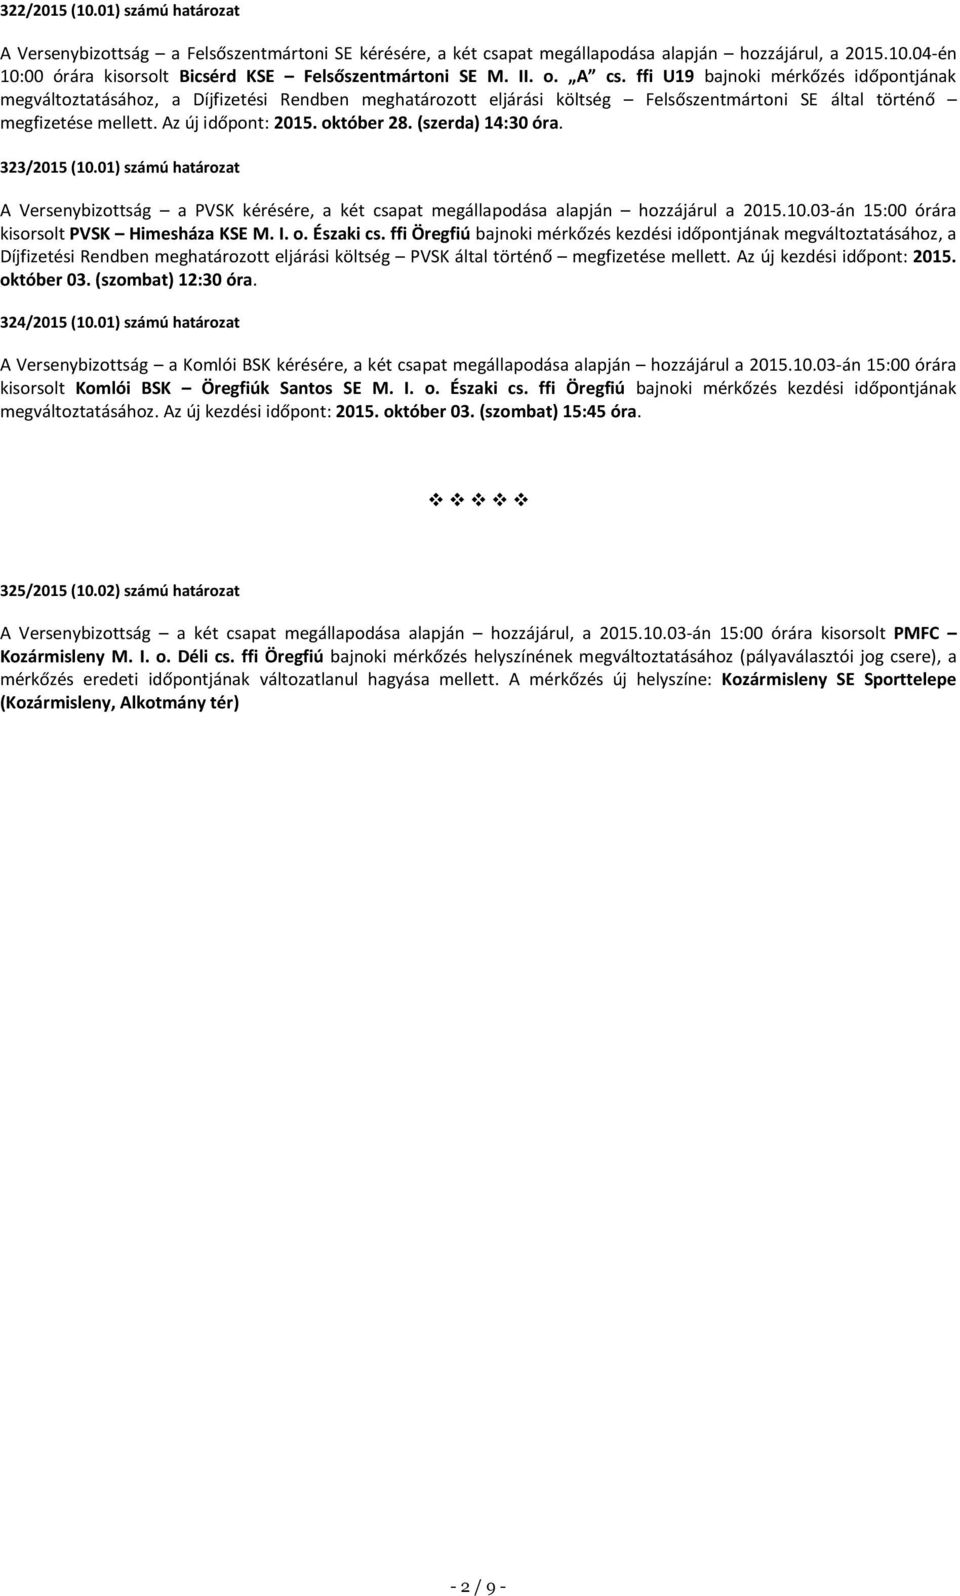 október 28. (szerda) 14:30 óra. 323/2015 (10.01) számú határozat A Versenybizottság a PVSK kérésére, a két csapat megállapodása alapján hozzájárul a 2015.10.03-án 15:00 órára kisorsolt PVSK Himesháza KSE M.